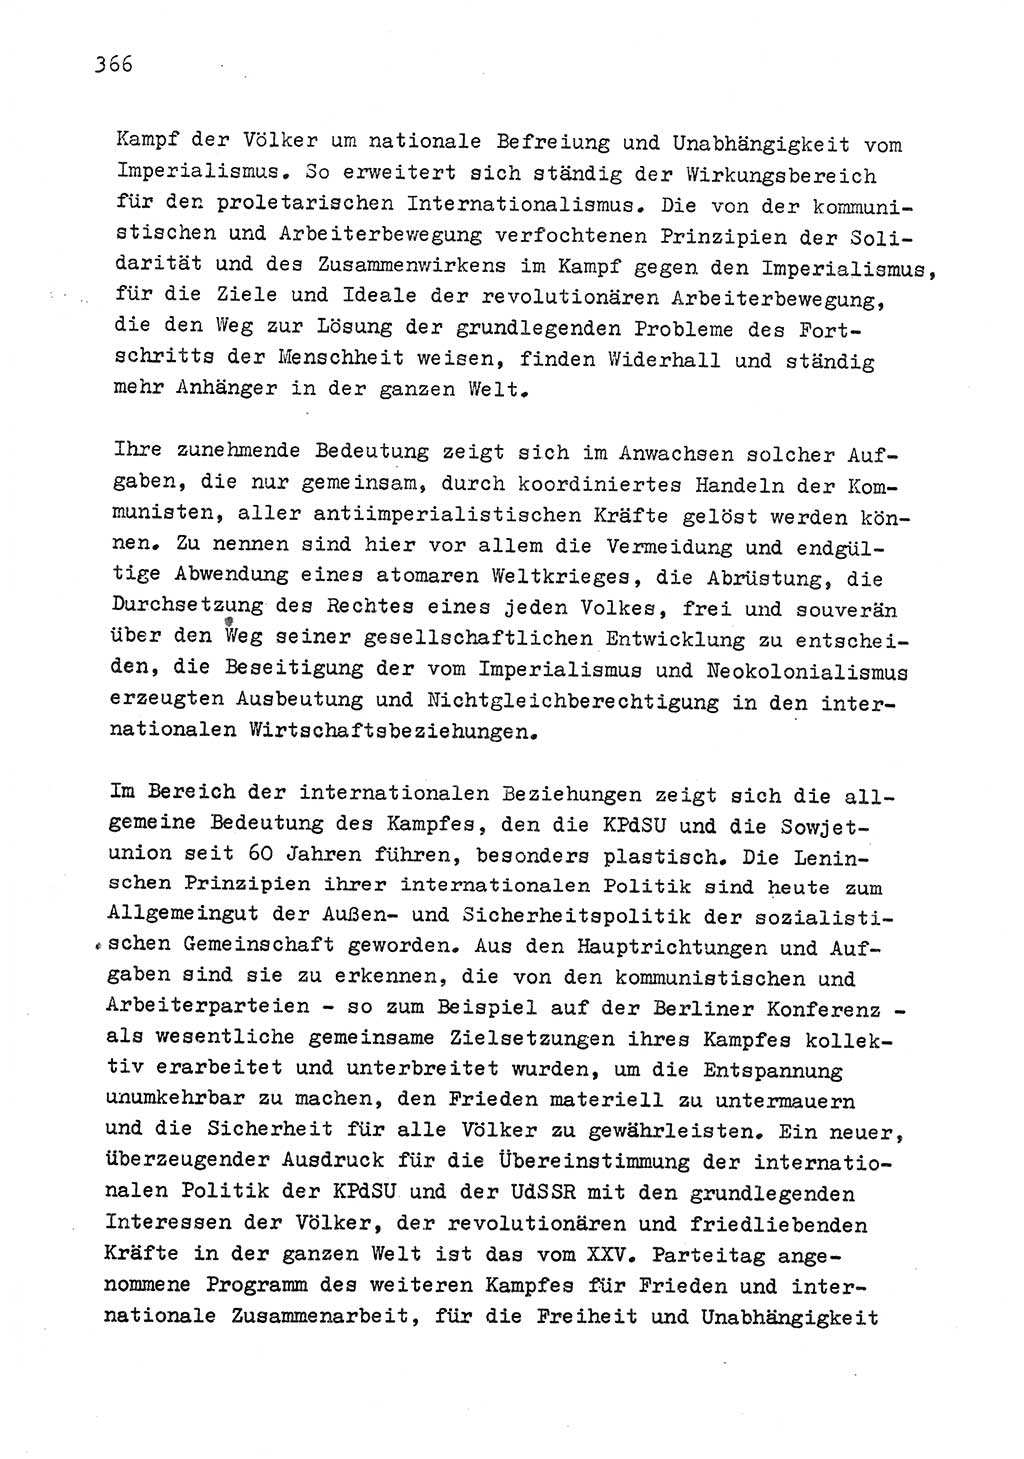 Zu Fragen der Parteiarbeit [Sozialistische Einheitspartei Deutschlands (SED) Deutsche Demokratische Republik (DDR)] 1979, Seite 366 (Fr. PA SED DDR 1979, S. 366)